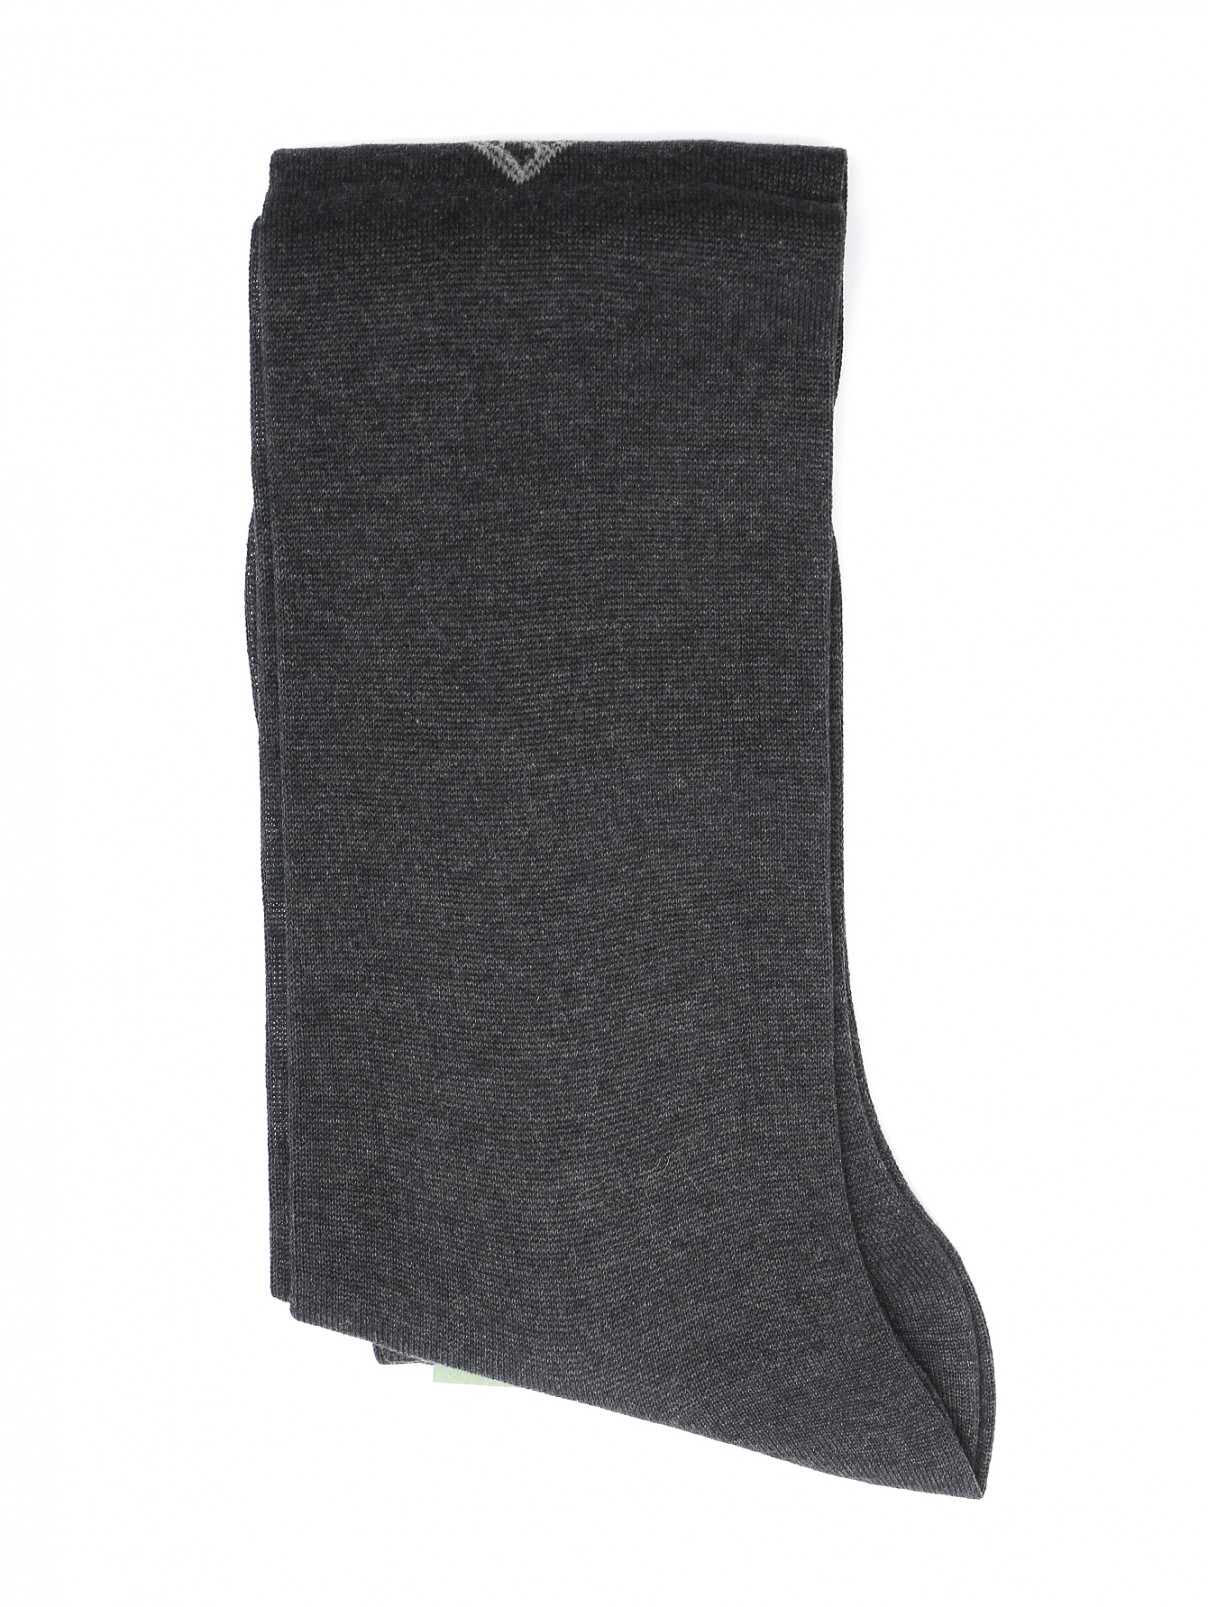 Однотонные носки из хлопка Pal Zileri  –  Общий вид  – Цвет:  Серый